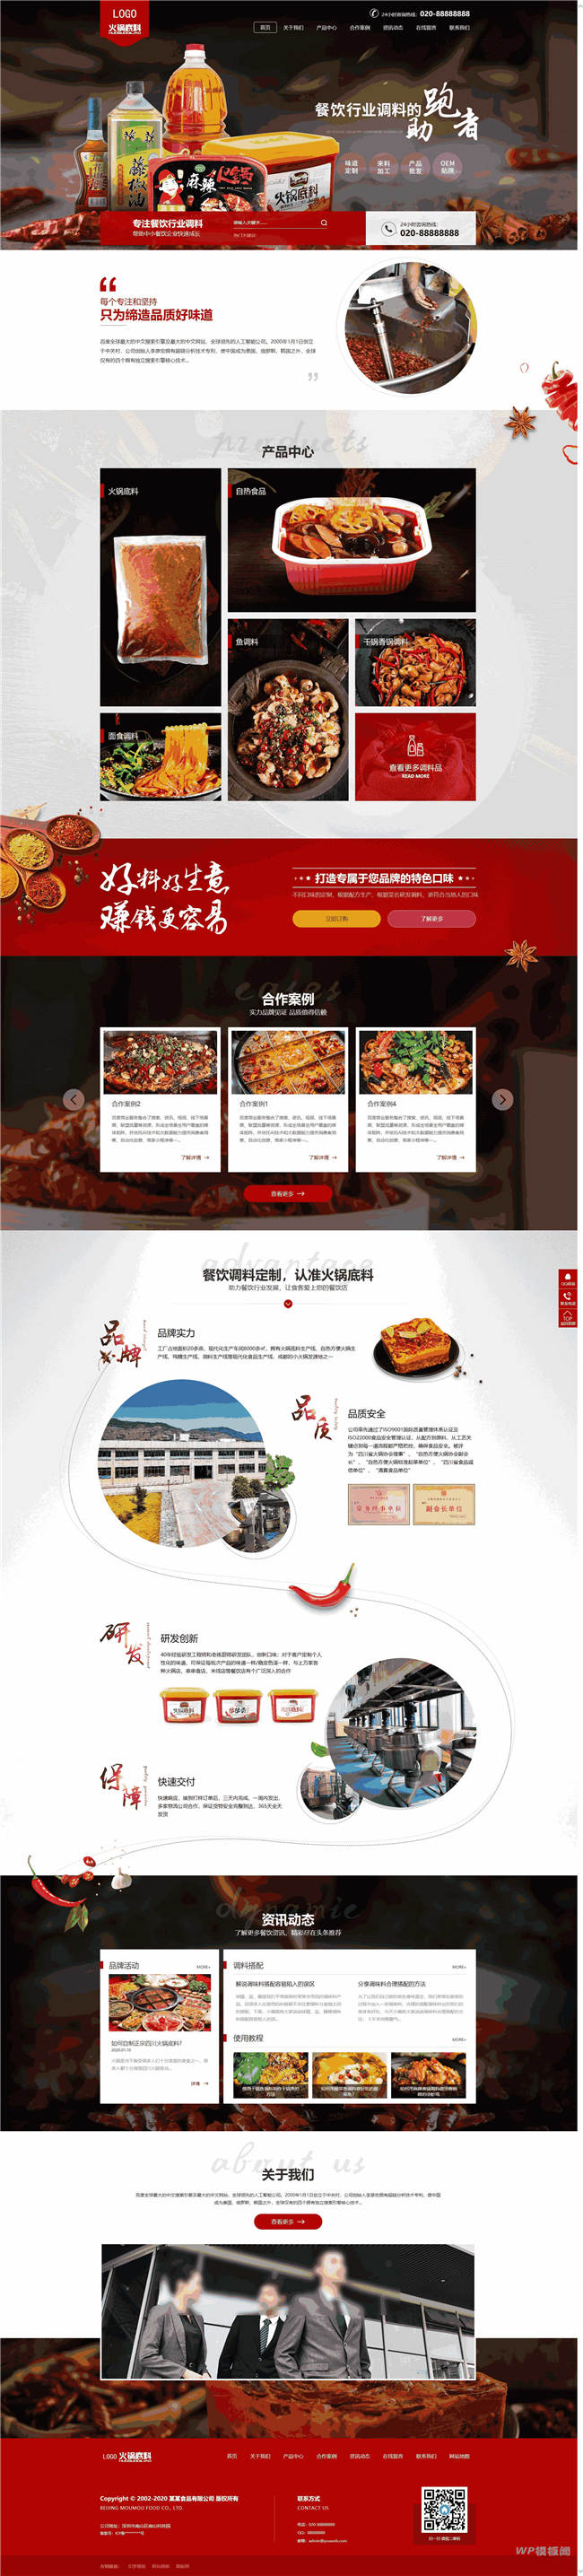 营销型高端火锅底料餐饮调料食品网站Wordpress模板(带手机站)截图